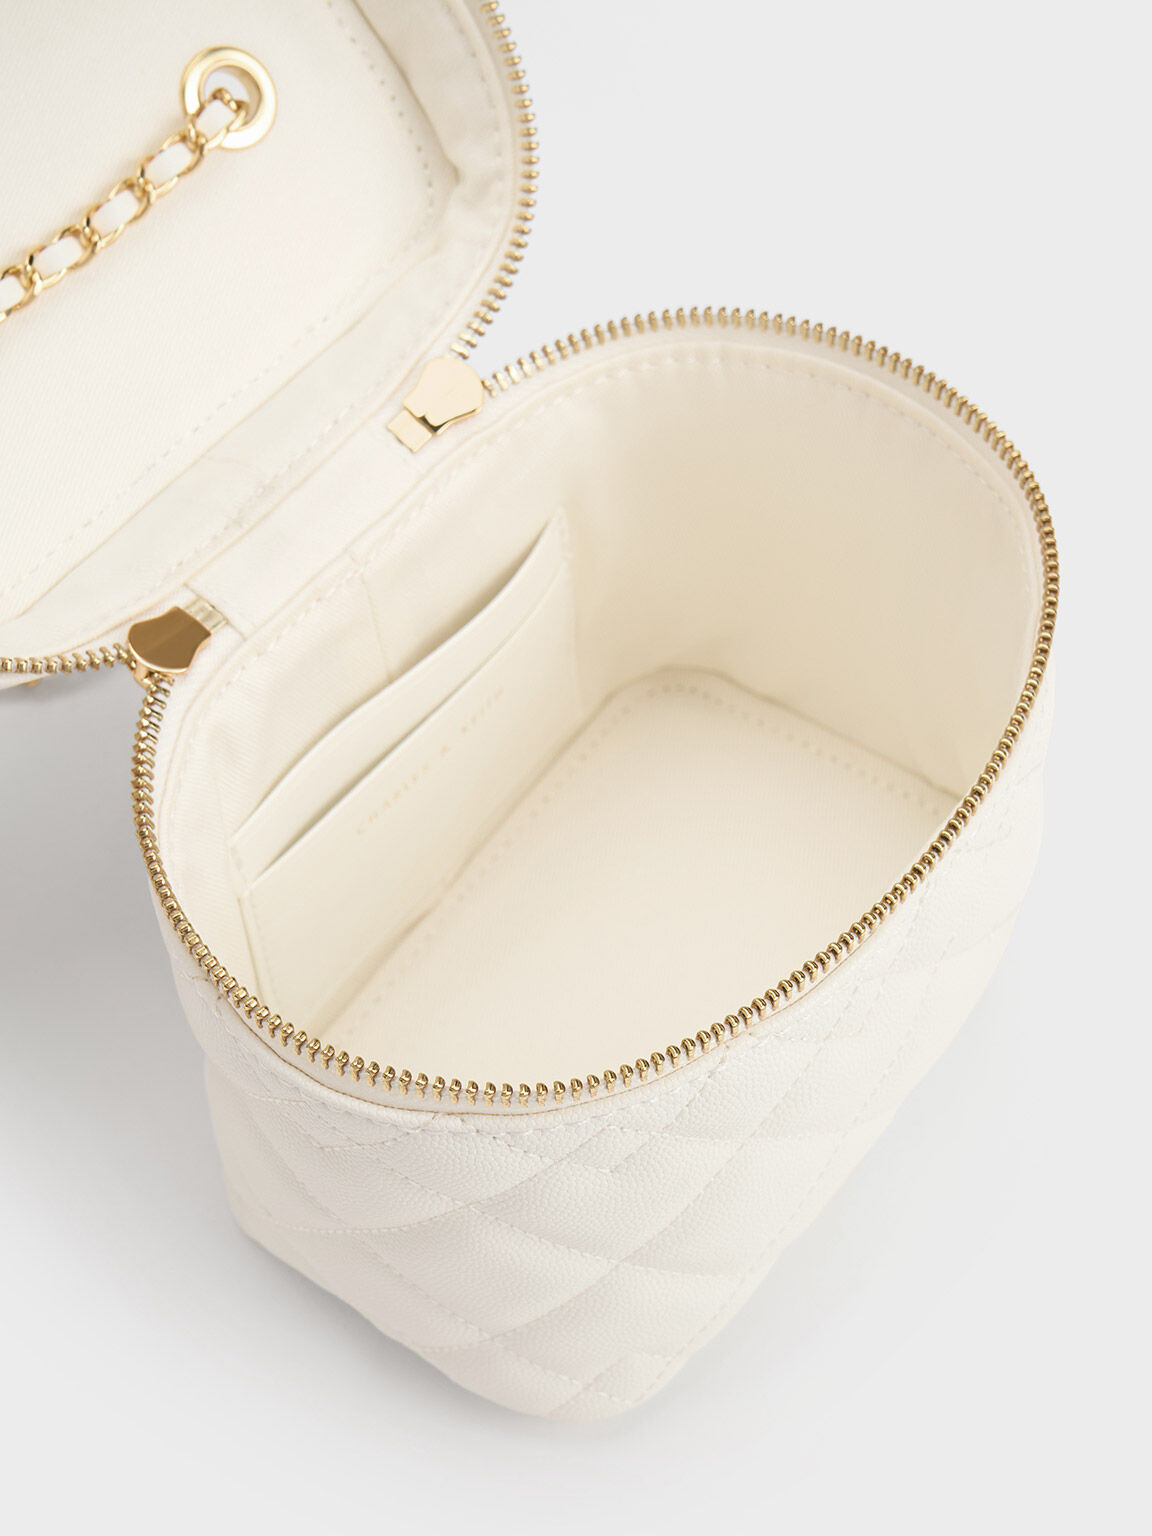 กระเป๋าสะพายข้างทรงกล่องดีไซน์ลายควิลท์รุ่น Nezu, สีขาว, hi-res